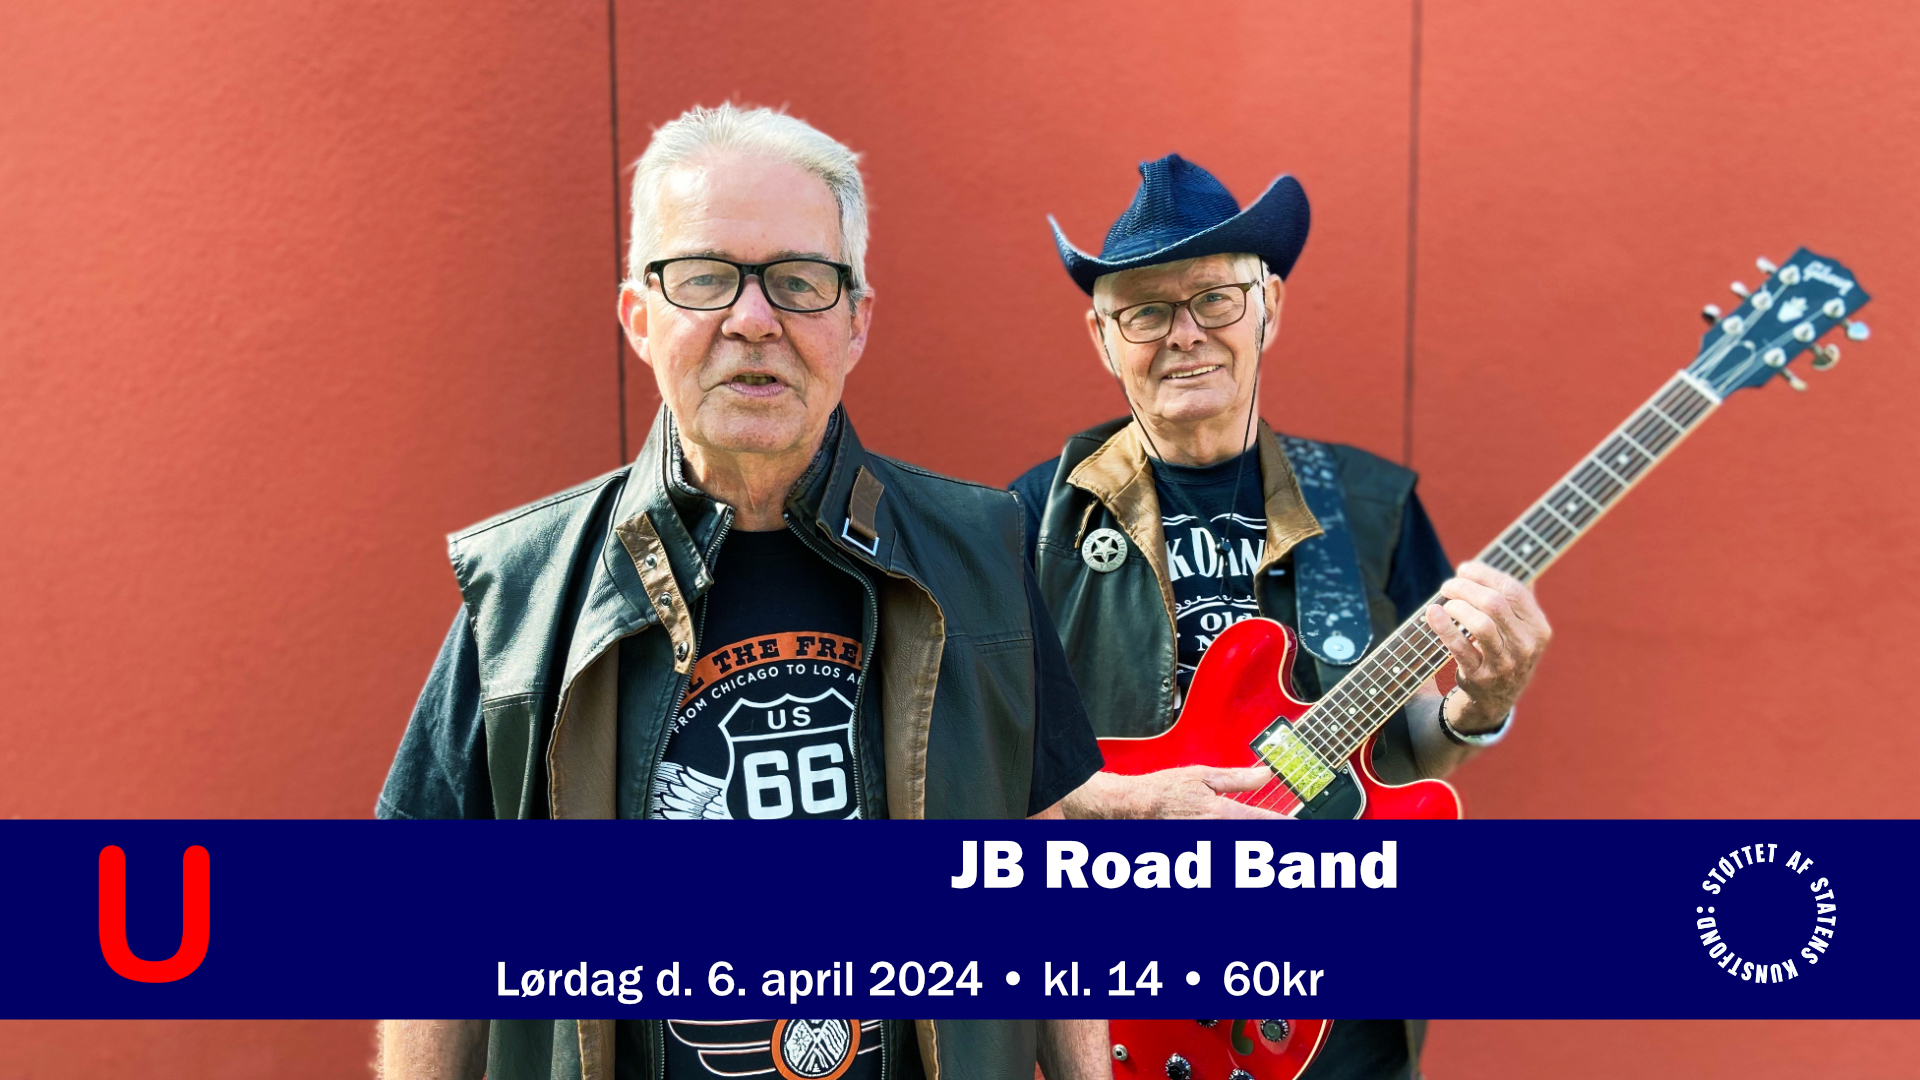 JB Road Band